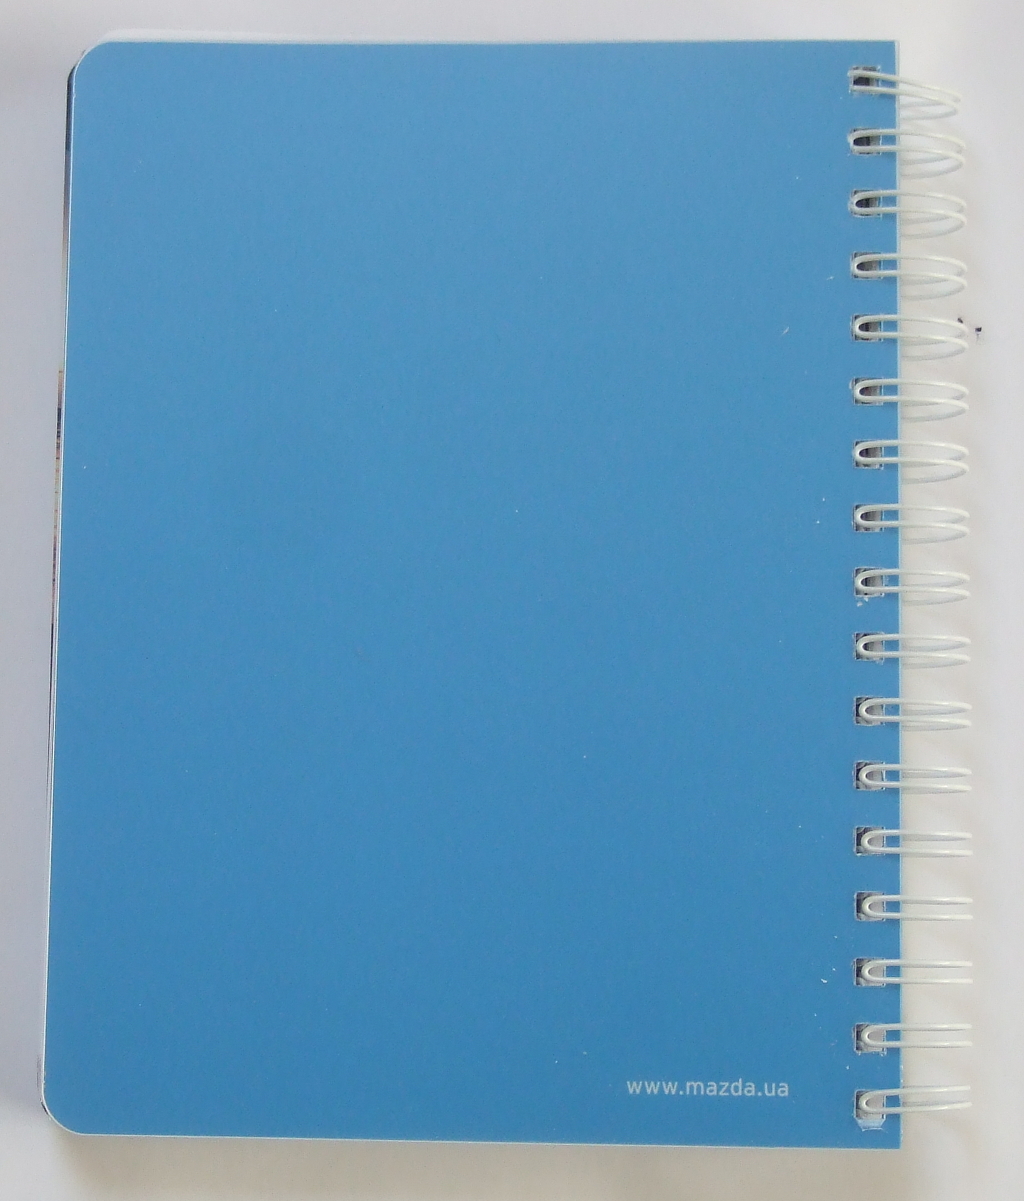 Виготовлення щоденників «Mazda». Поліграфія друкарні Макрос, виготовлення щоденників, специфікація 952993-6